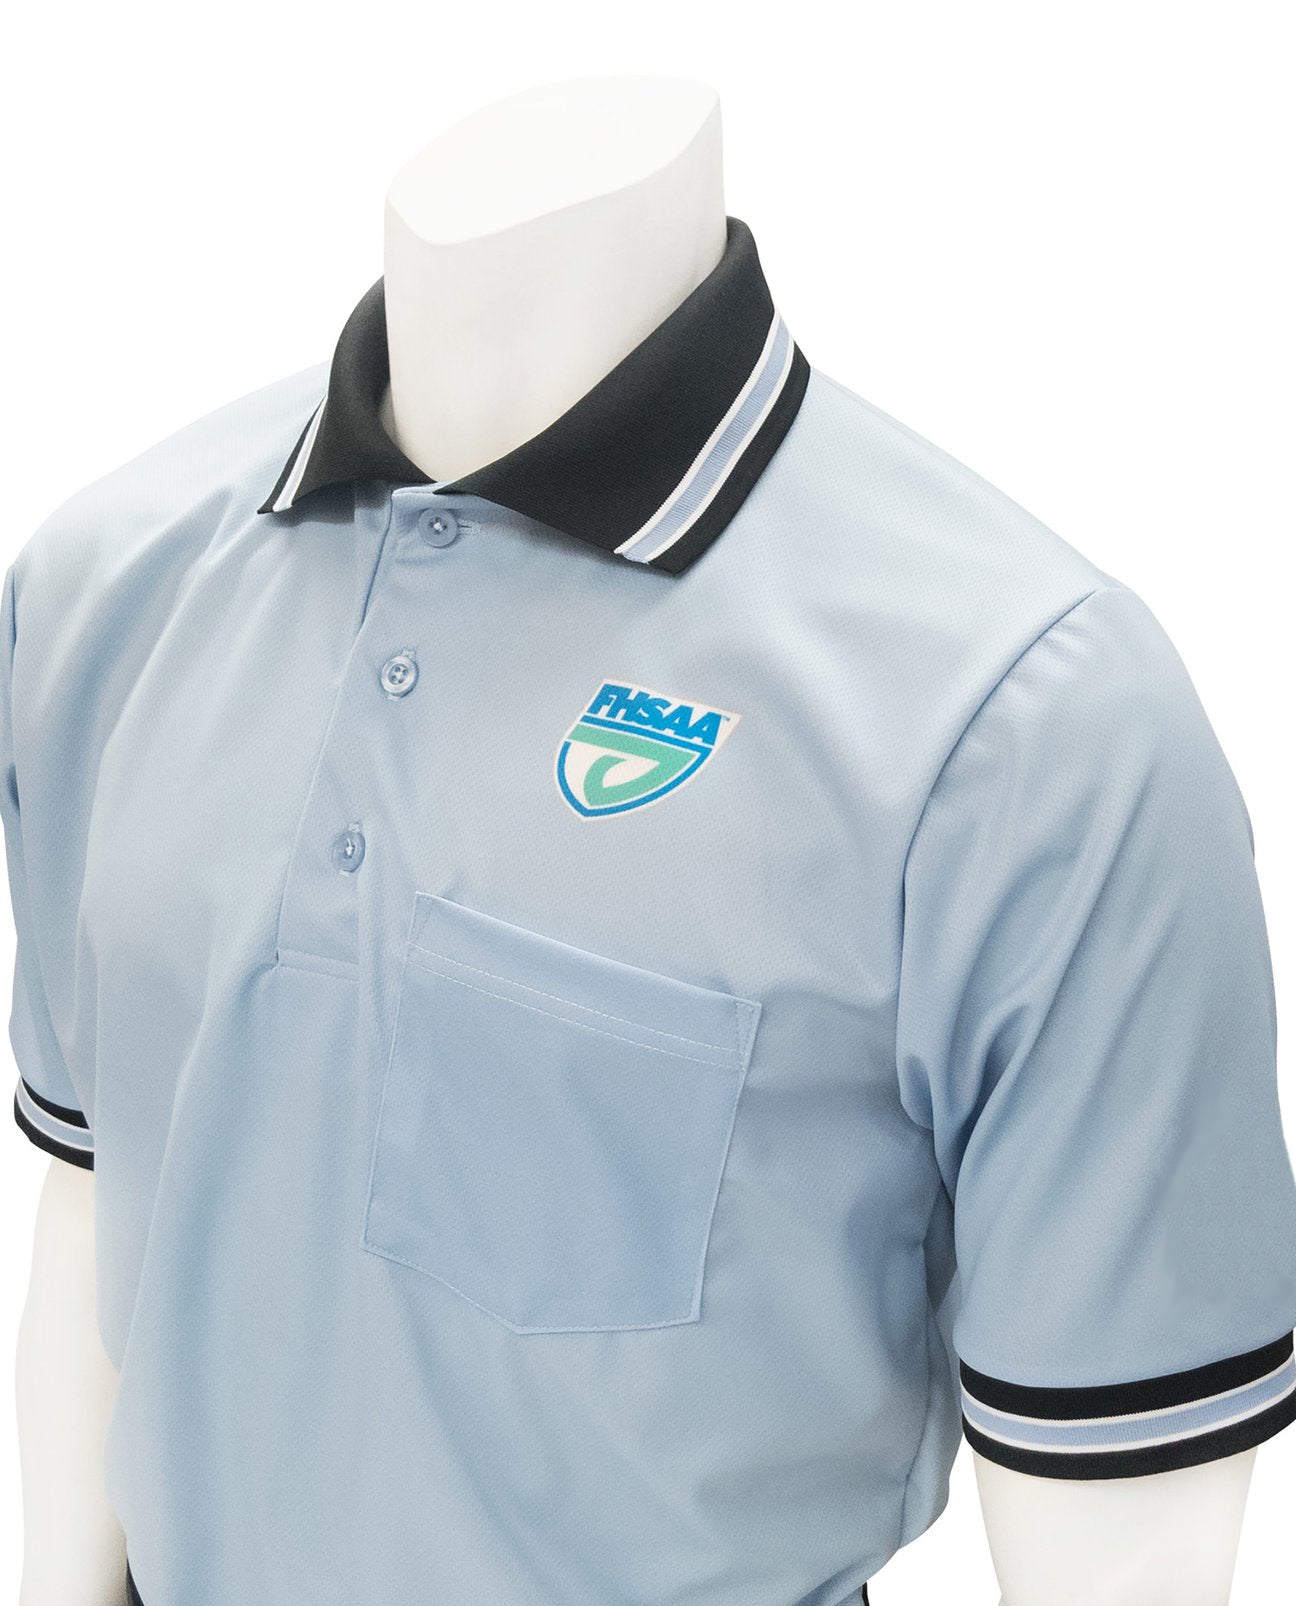 USA300FL - Smitty "Made in USA" - Softball Short Sleeve Shirt Carolina Blue